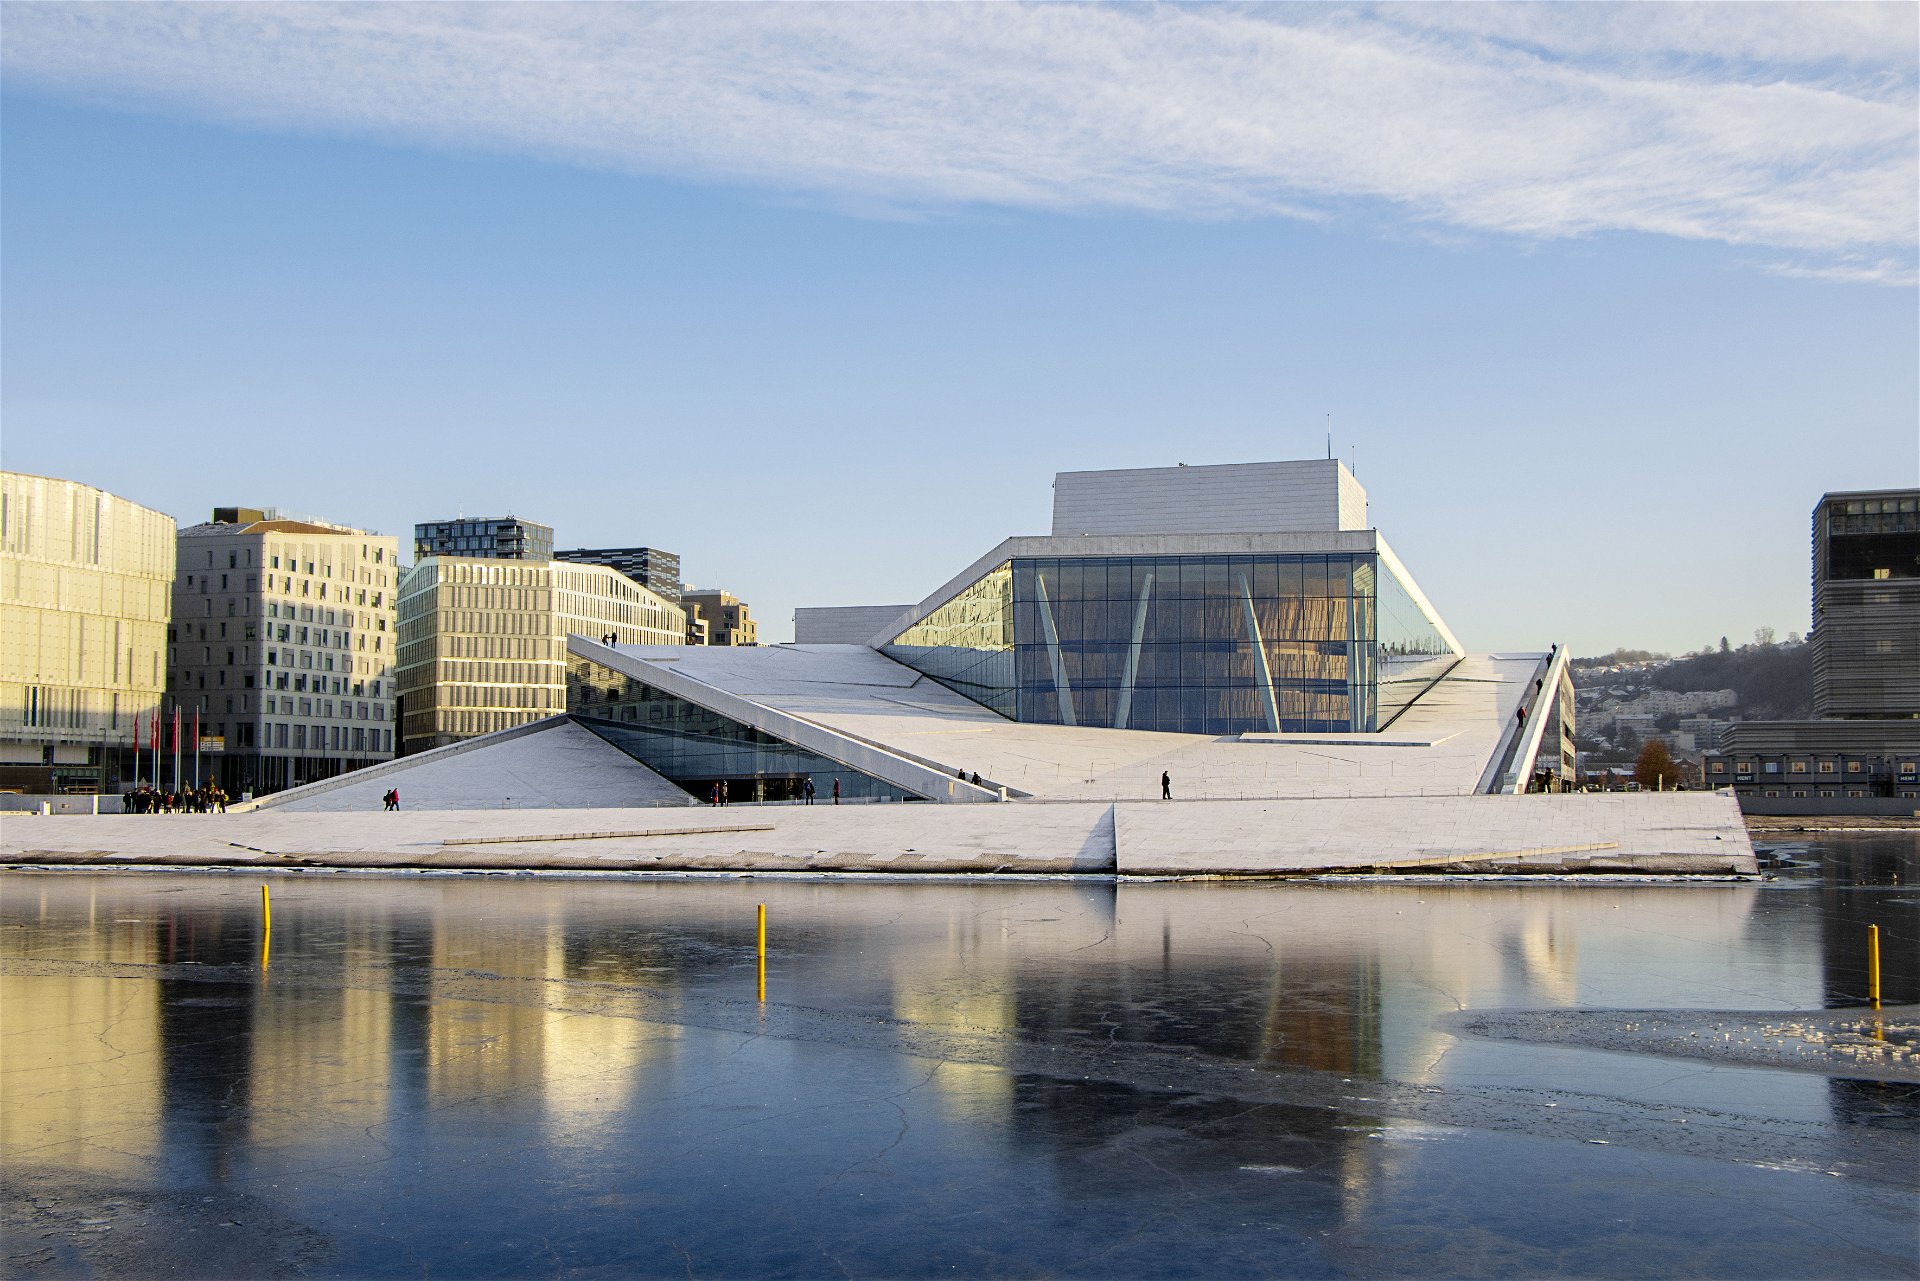 Opernhaus Oslo: Snøhetta, 2007. »Die erste kulturelle Institution am Ufer. Sie sticht heraus durch ihr begehbares Dach, ein großartiger öffentlicher Raum, der sowohl mächtig als auch erhaben wirkt – und immer von Menschen belebt ist.«